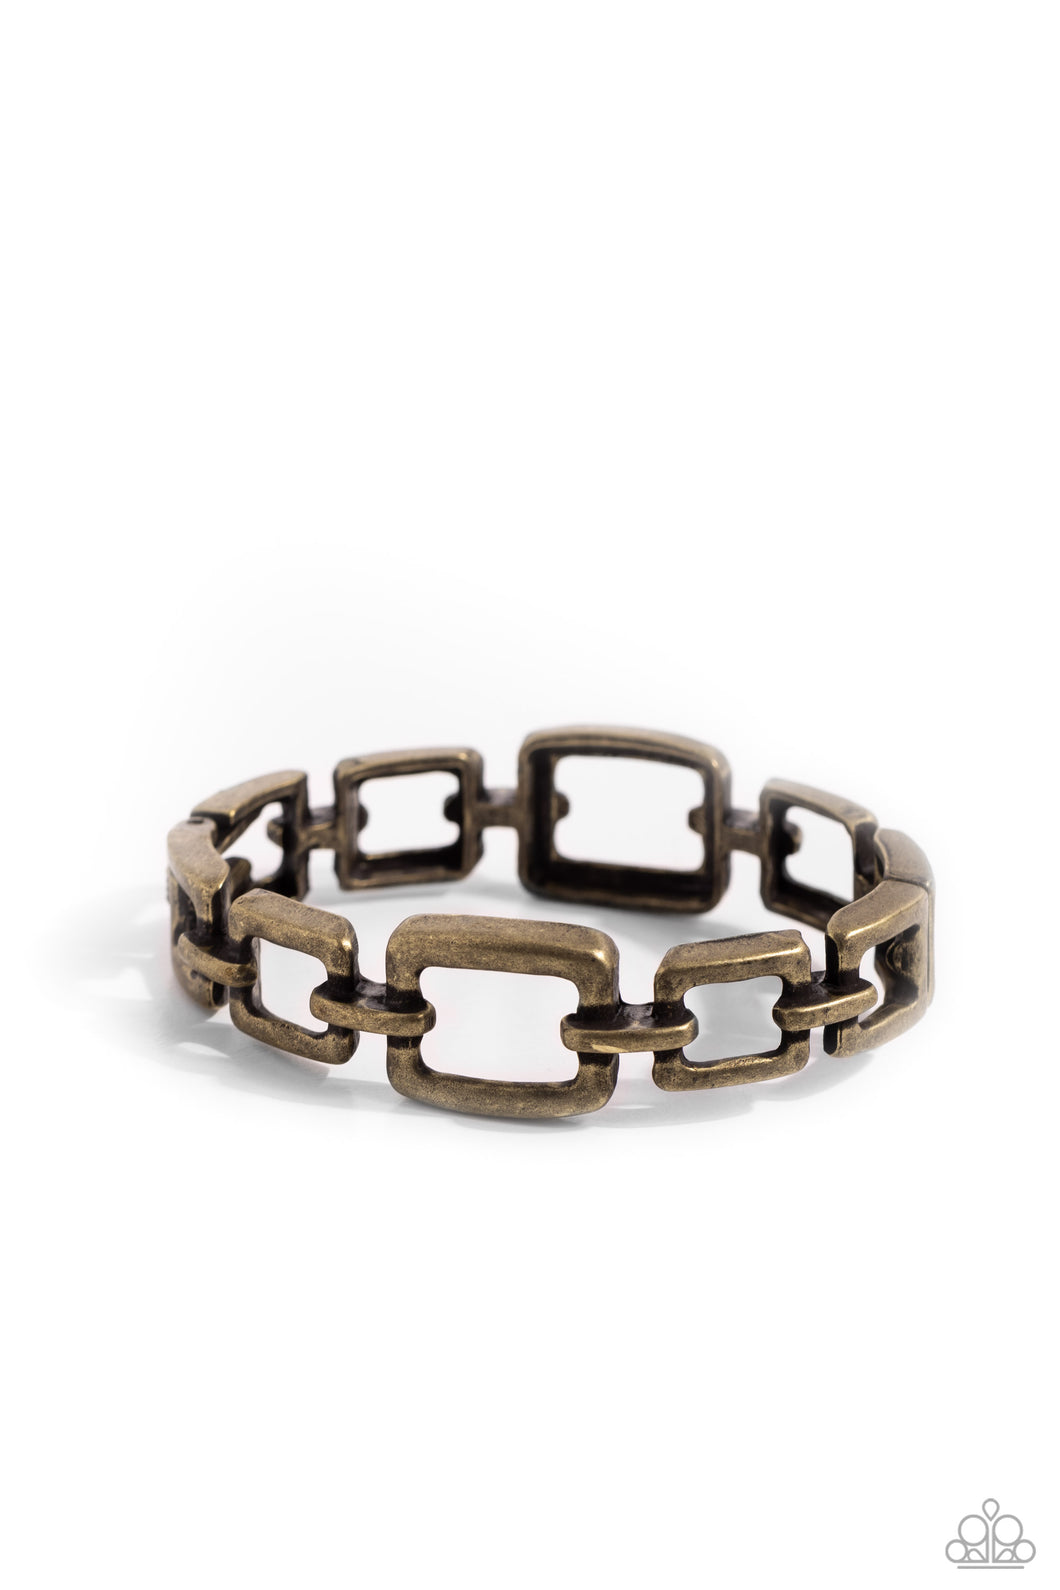 Square Inch - Brass bracelet - Paparazzi - Dare2bdazzlin N Jewelry